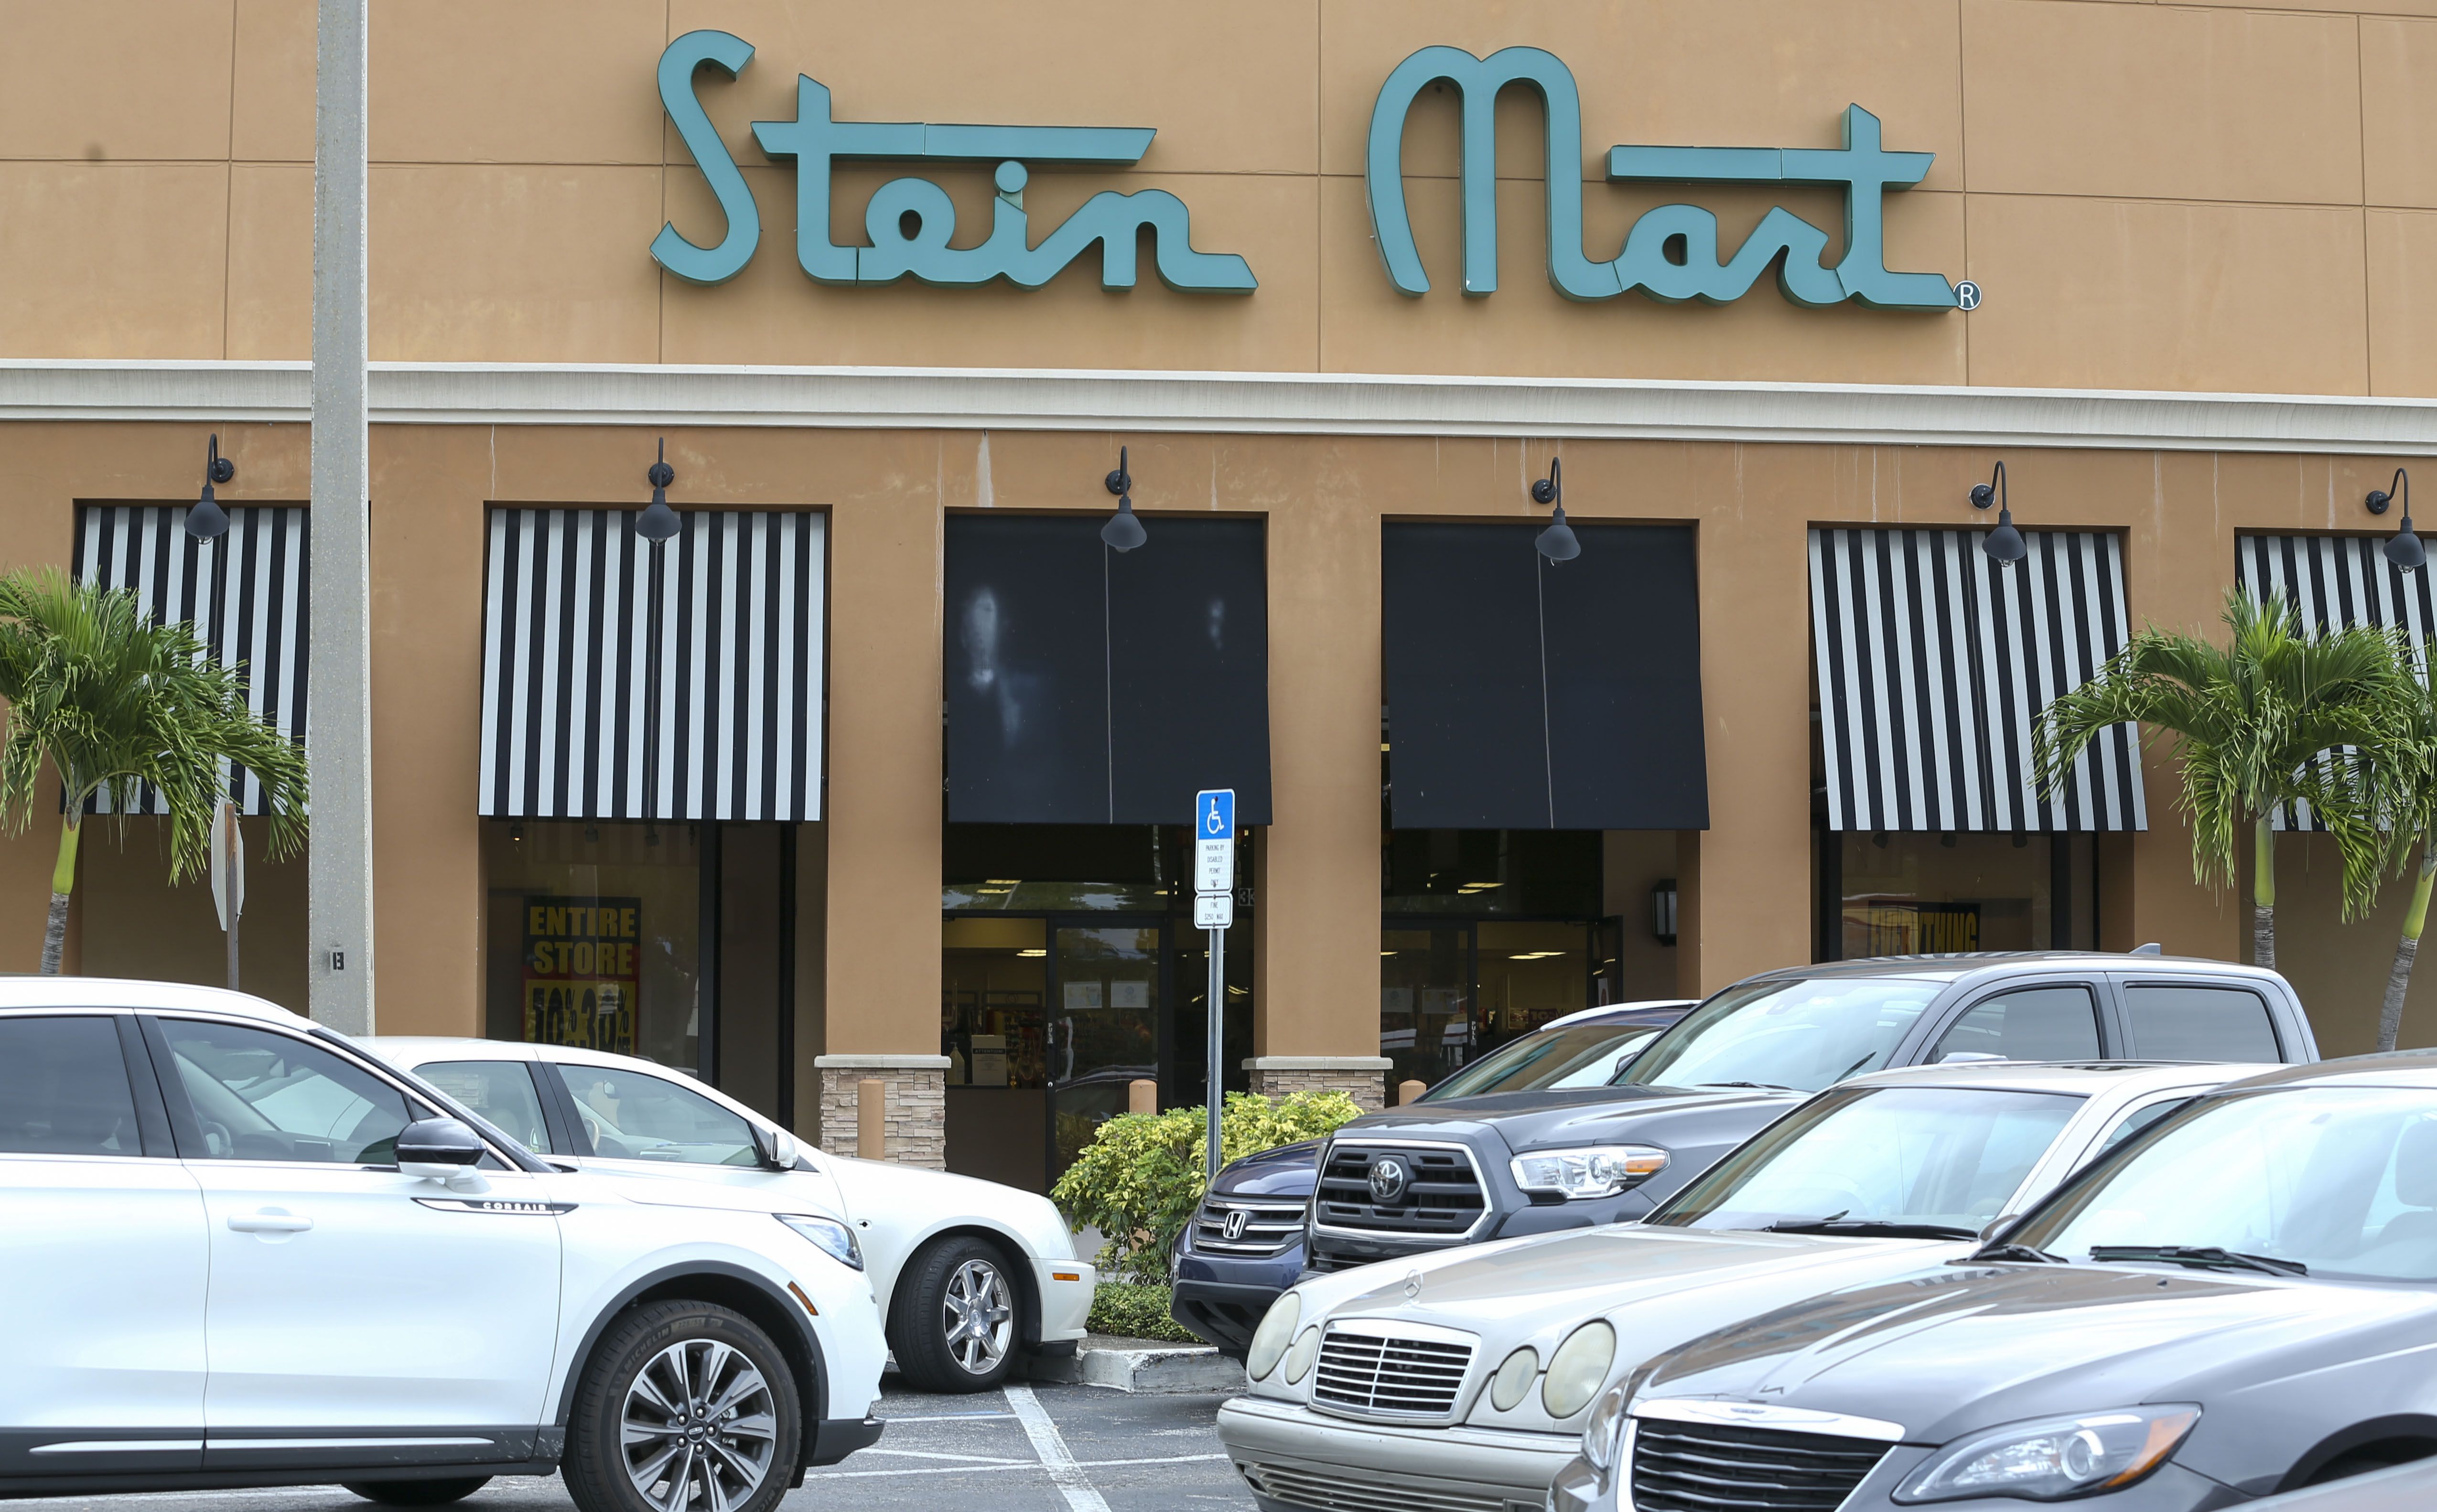 My Florida Retail Blog: Stein Mart Liquidation - Viera (Melbourne), FL